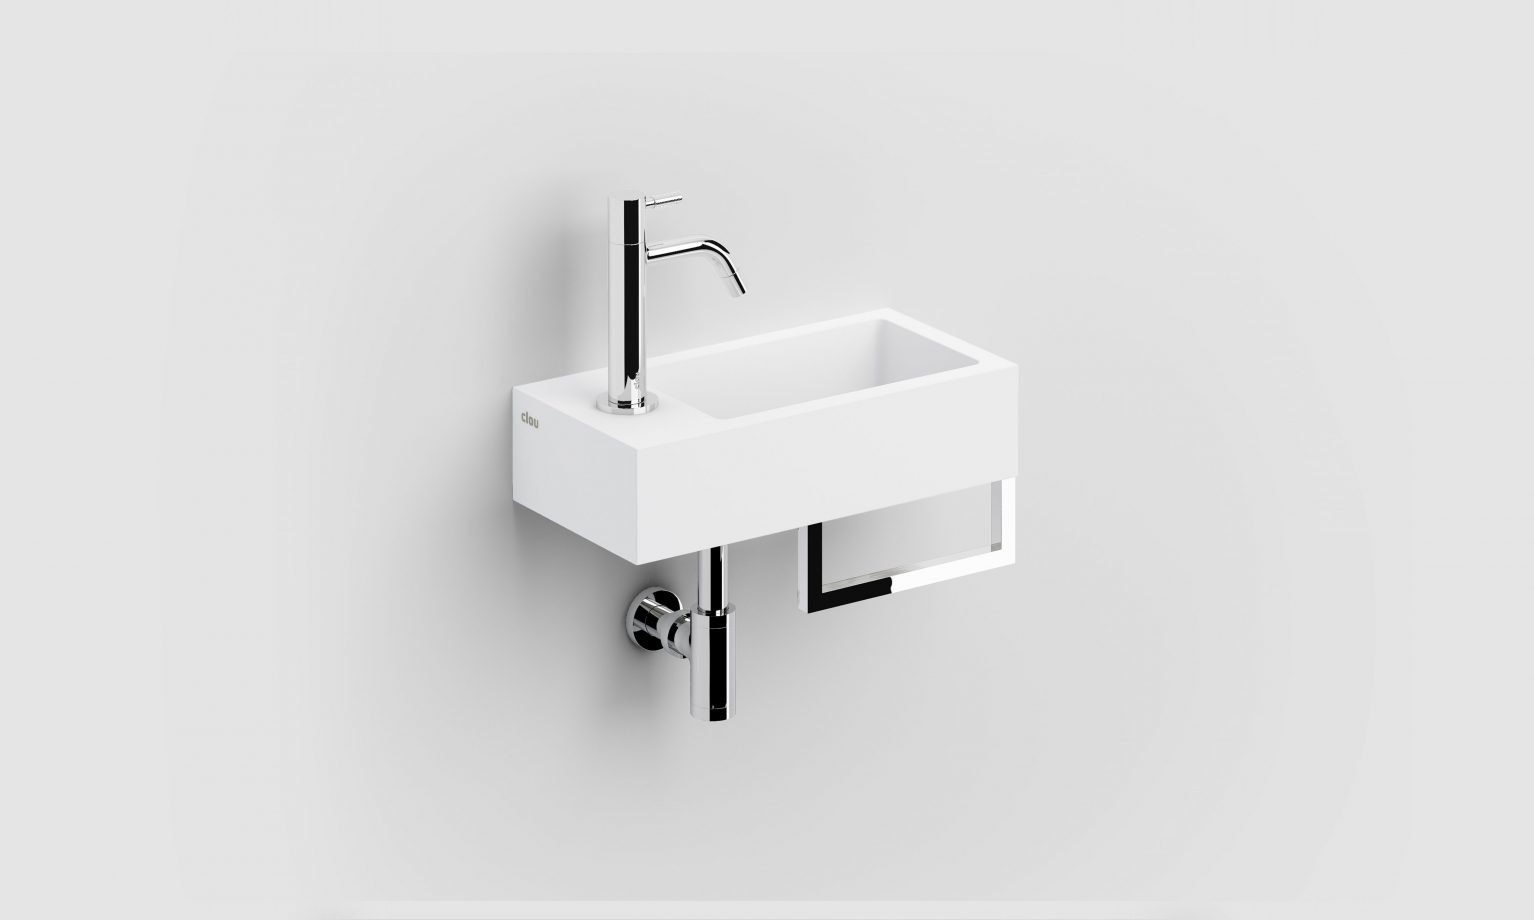 fontein-handdoekhouder-mat-wit-toilet-badkamer-luxe-sanitair-Flush-3-links-clou-CL031303202-composiet-chroom-voorbewerkt-kraangat-36cm-corian-solid-surface-Sp-shadow